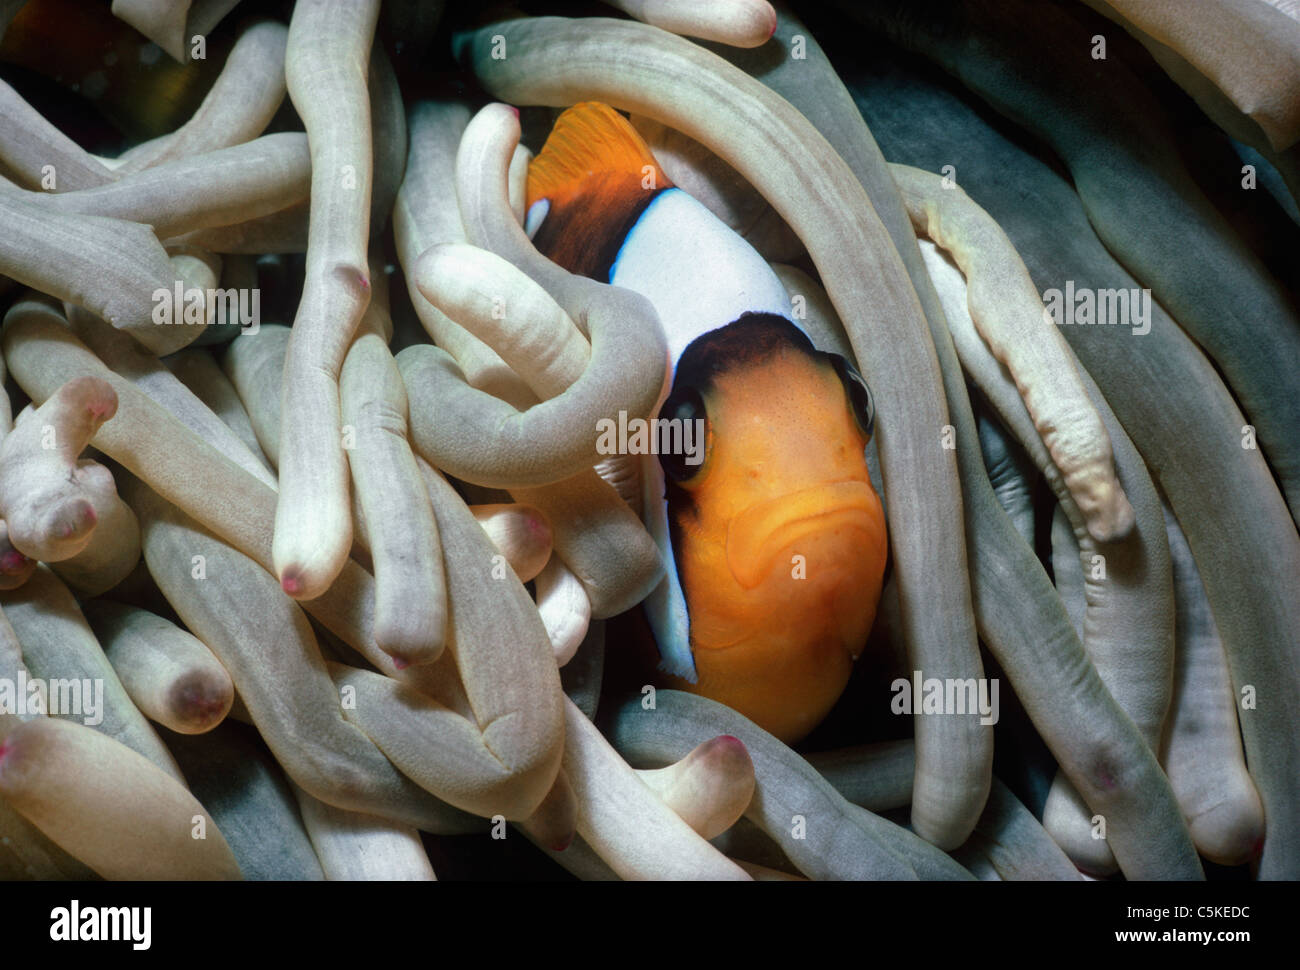 Una relazione simbiotica Two-Band Clownfish (Amphiprion bicinctus), nasconde nella protezione di un anemone marittimo di tentacoli. Egitto, Mar Rosso Foto Stock